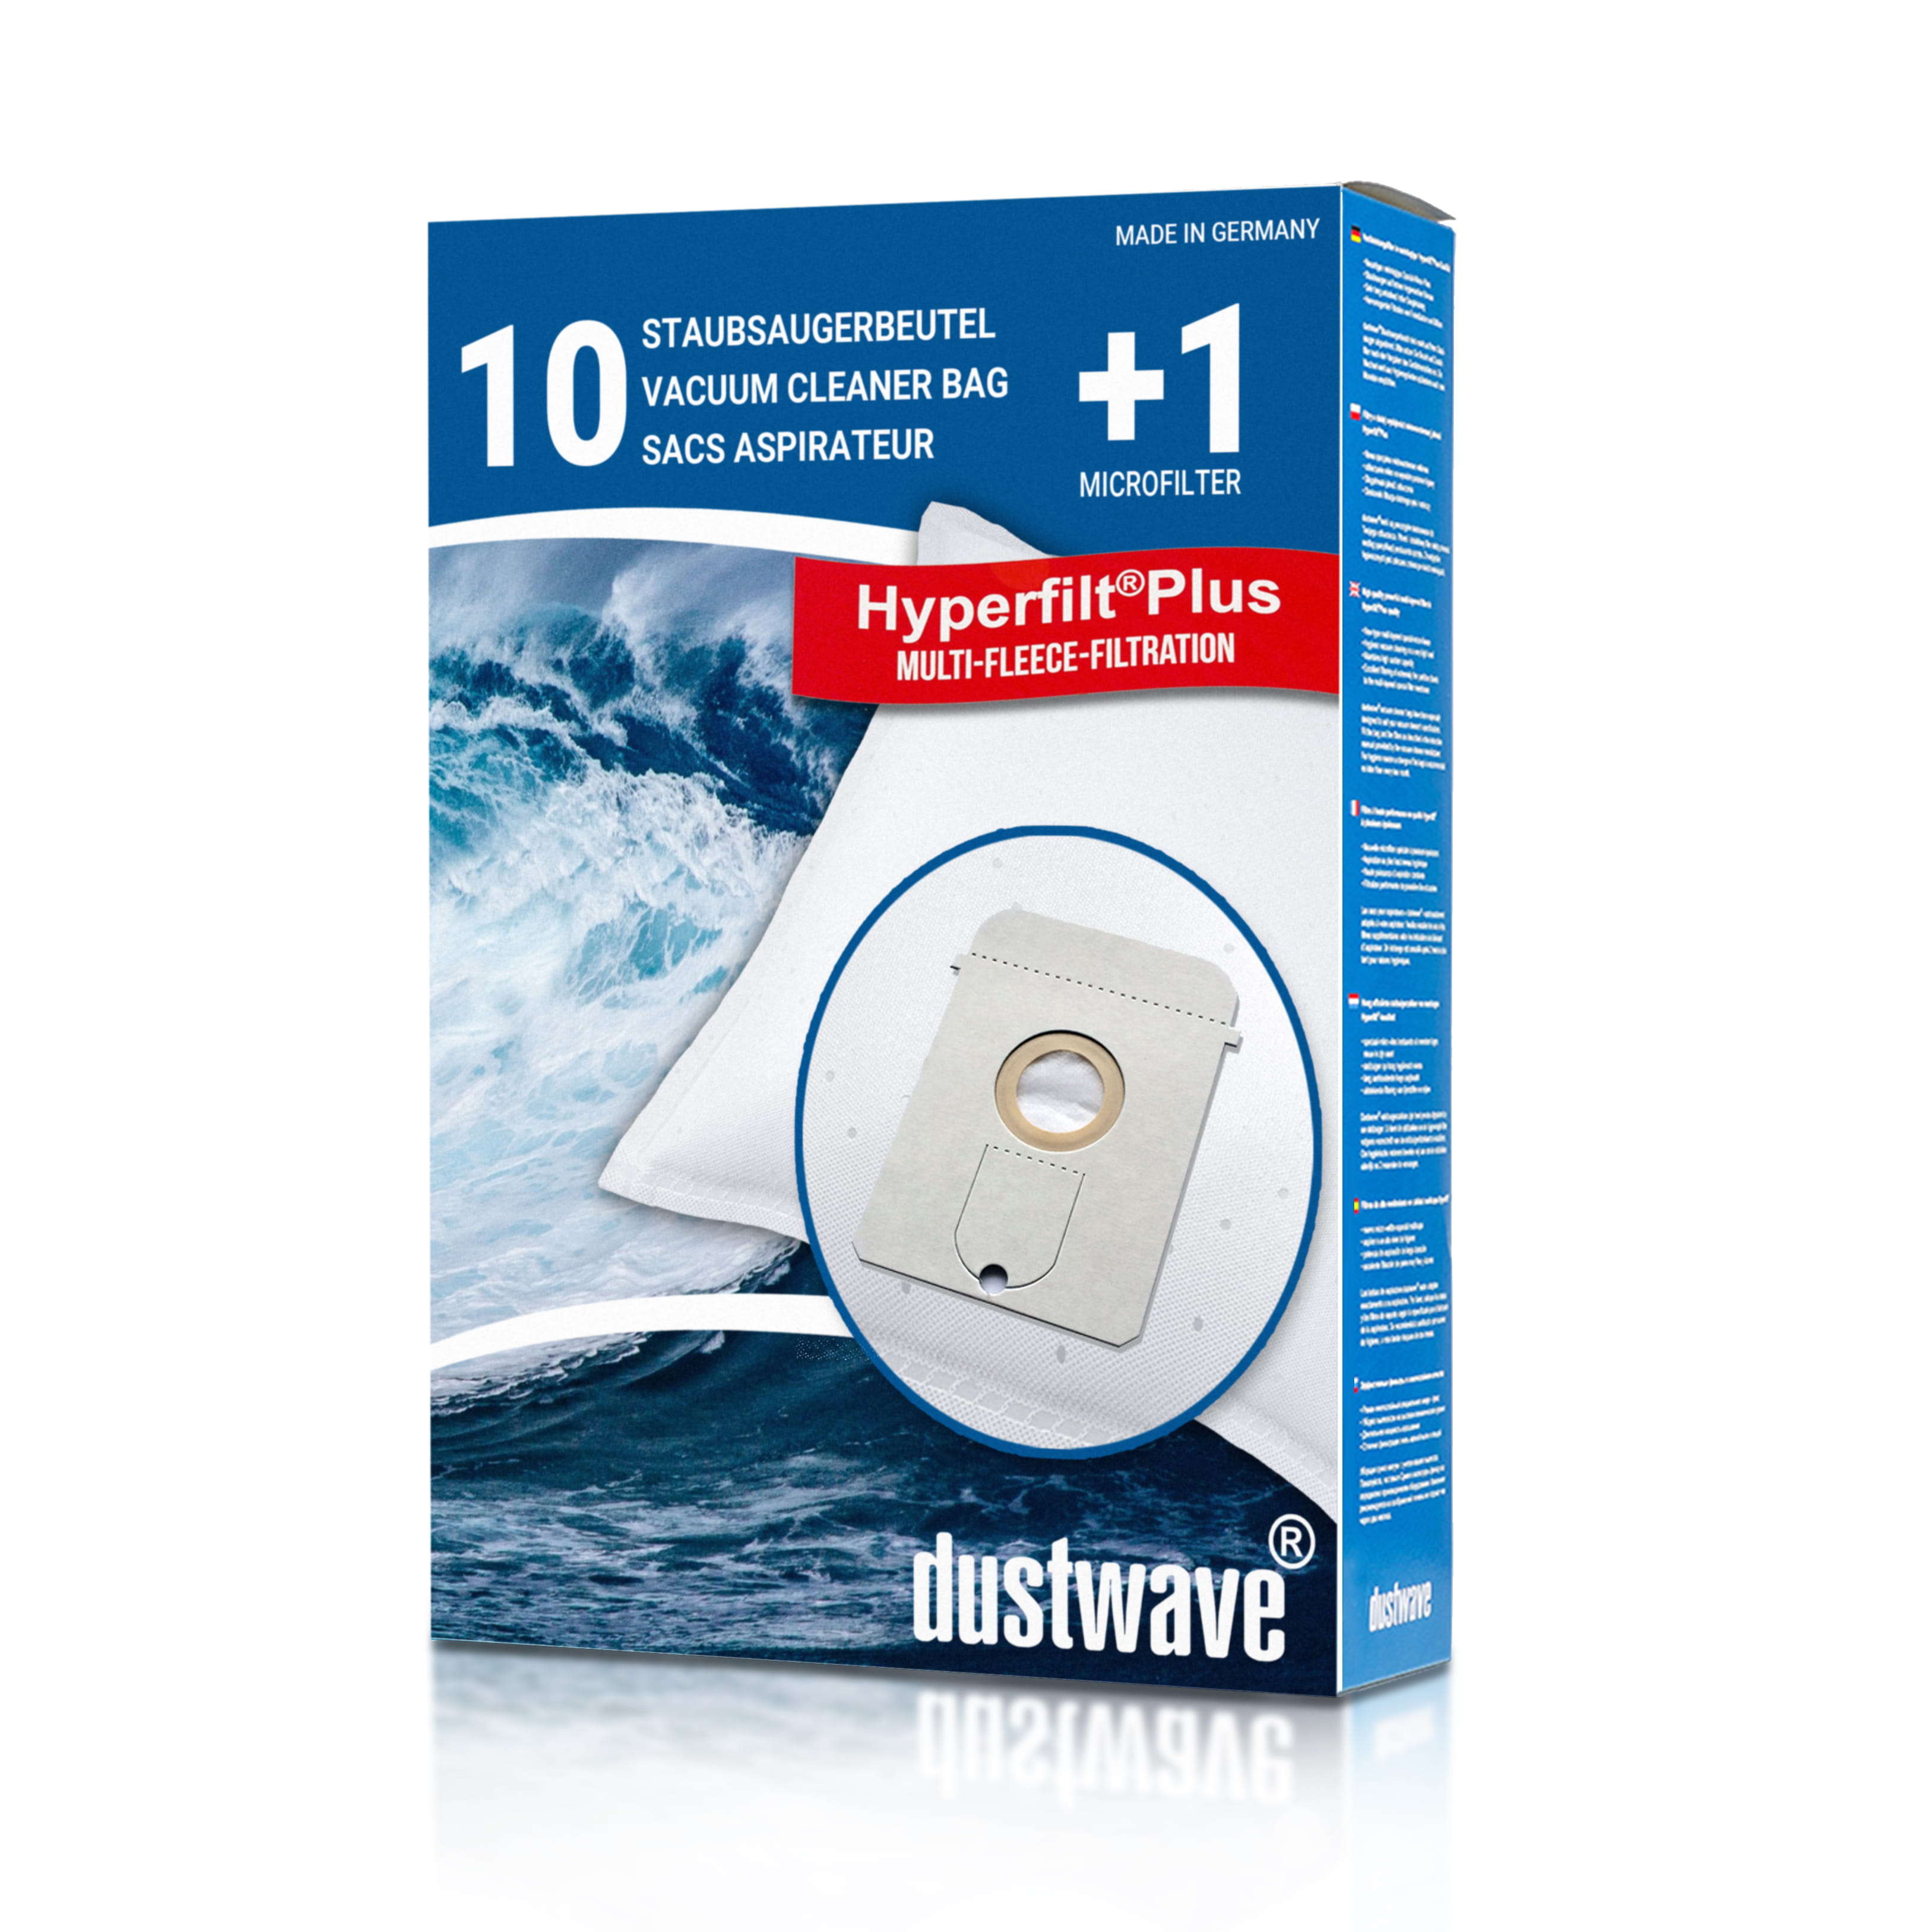 Dustwave® 10 Staubsaugerbeutel für AEG Vampyr 7700.5 - hocheffizient, mehrlagiges Mikrovlies mit Hygieneverschluss - Made in Germany